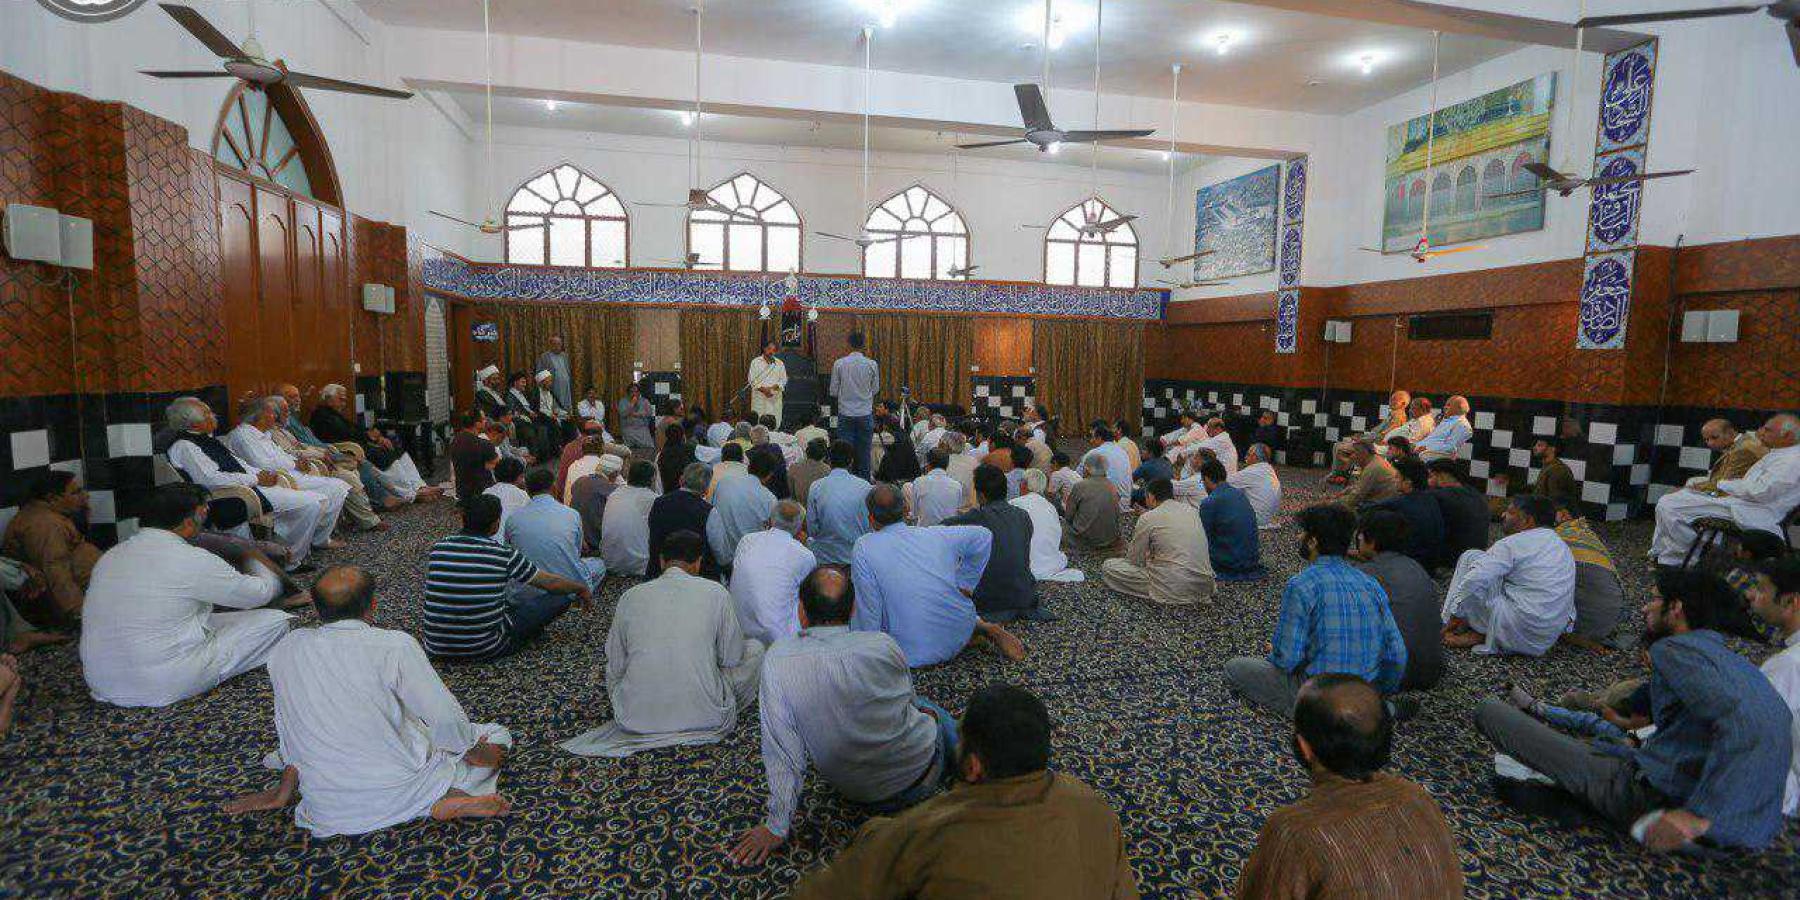 وفد العتبة العلوية الى مهرجان نسيم كربلاء في باكستان يزور أحد المساجد الكبرى بالعاصمة إسلام آباد